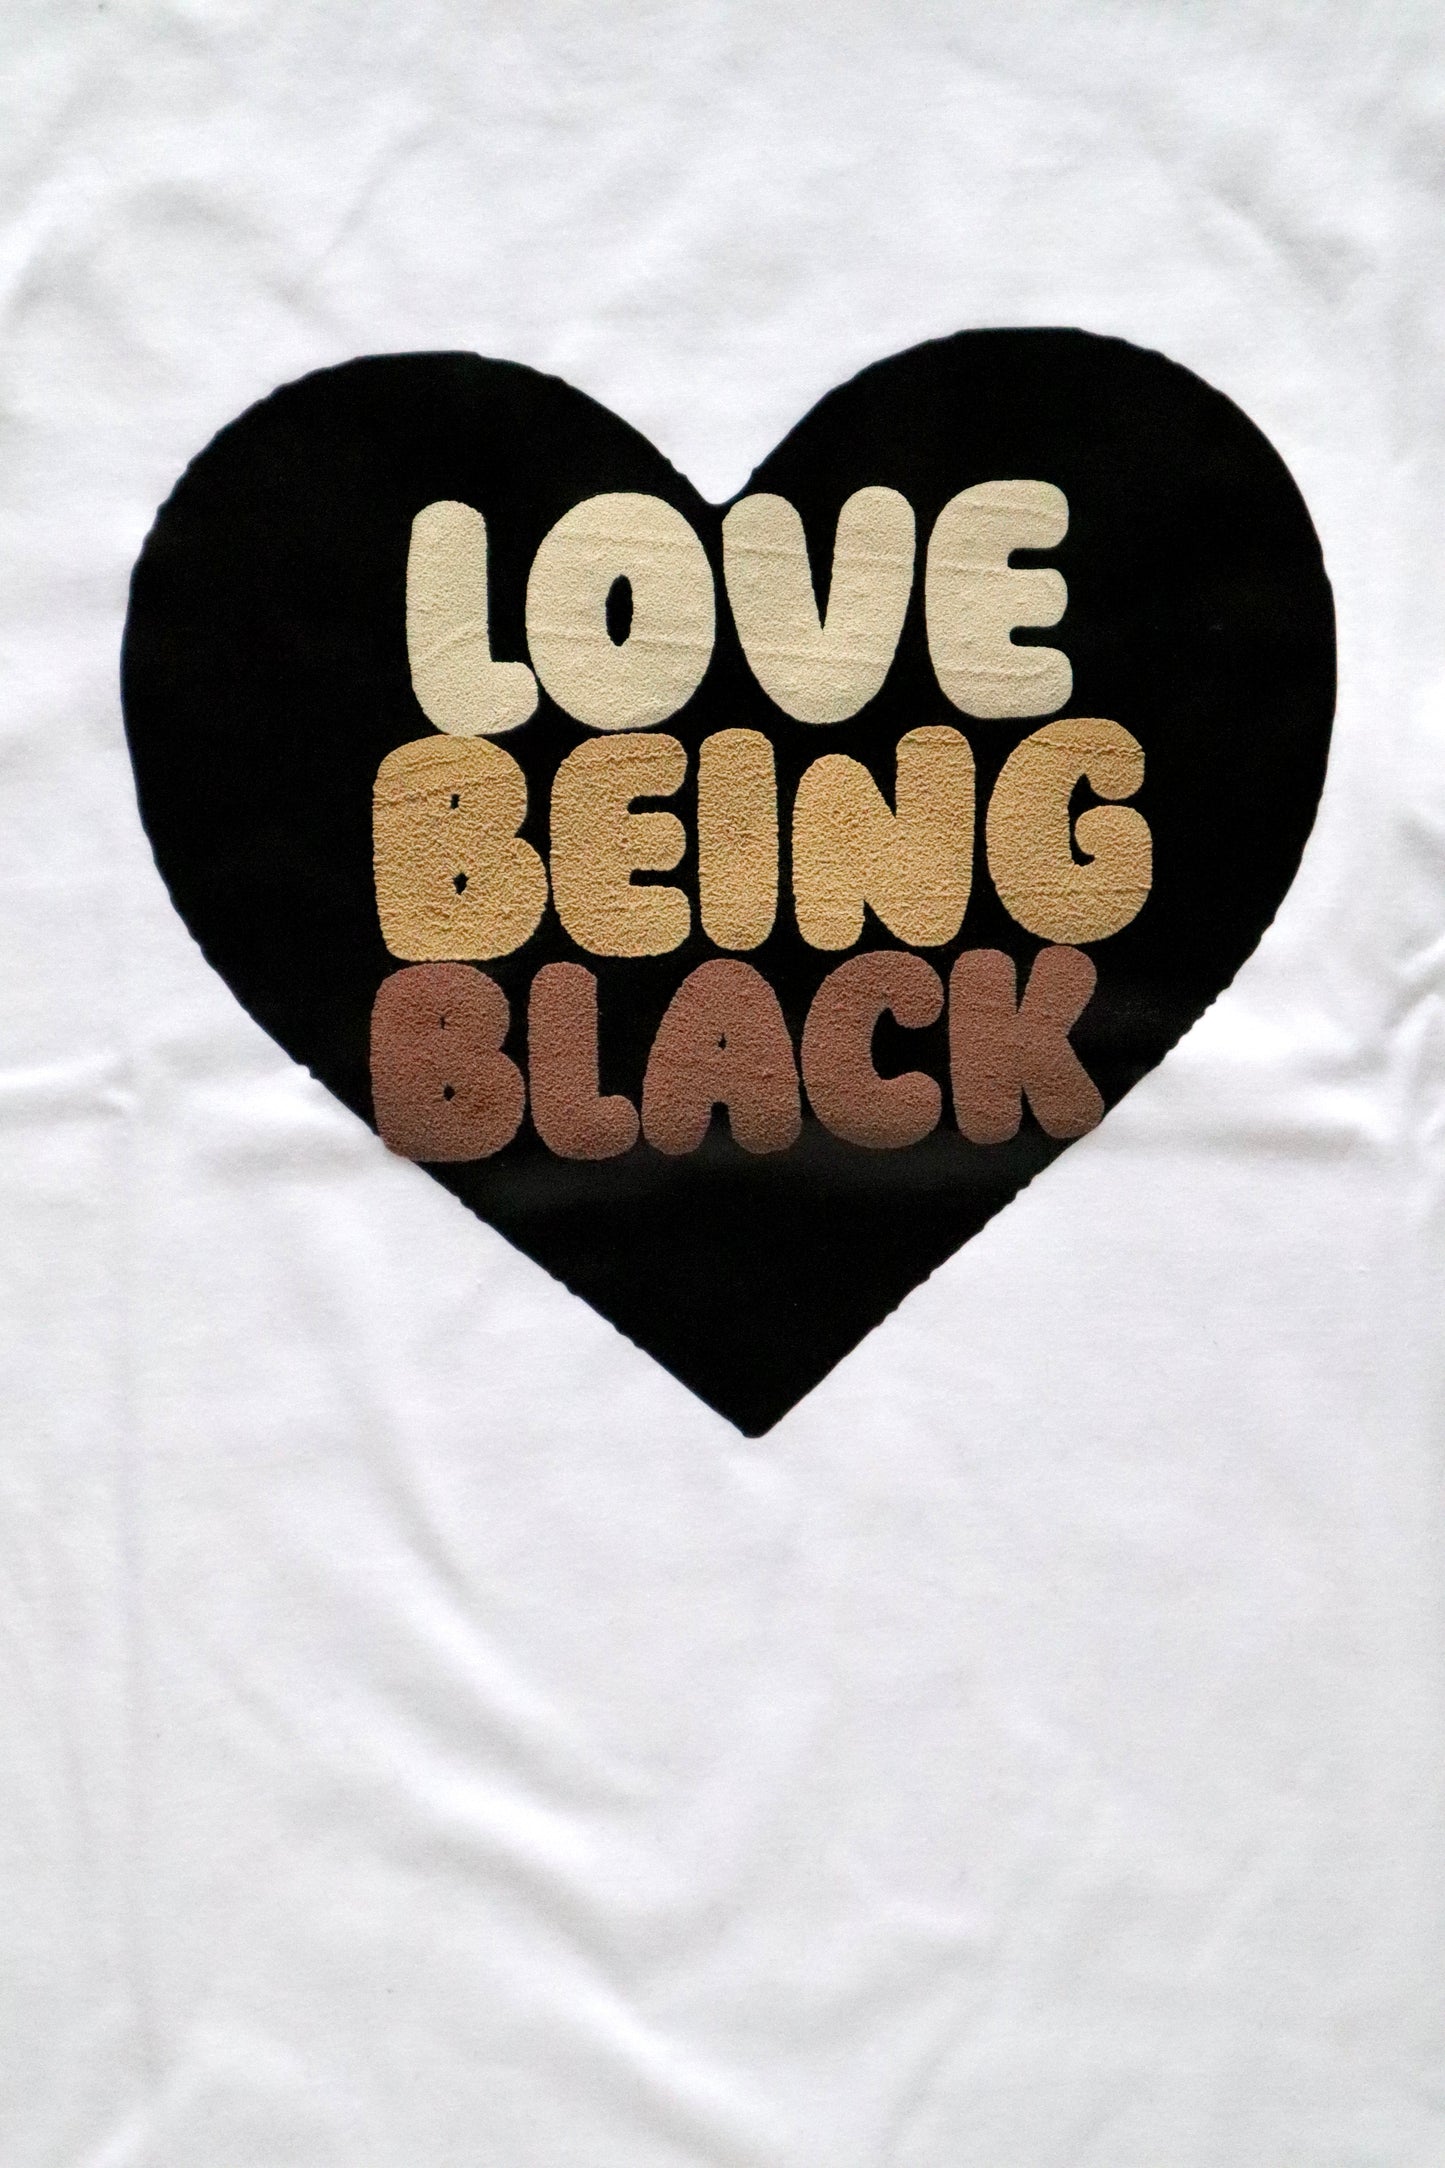 LOVE BEING BLACK